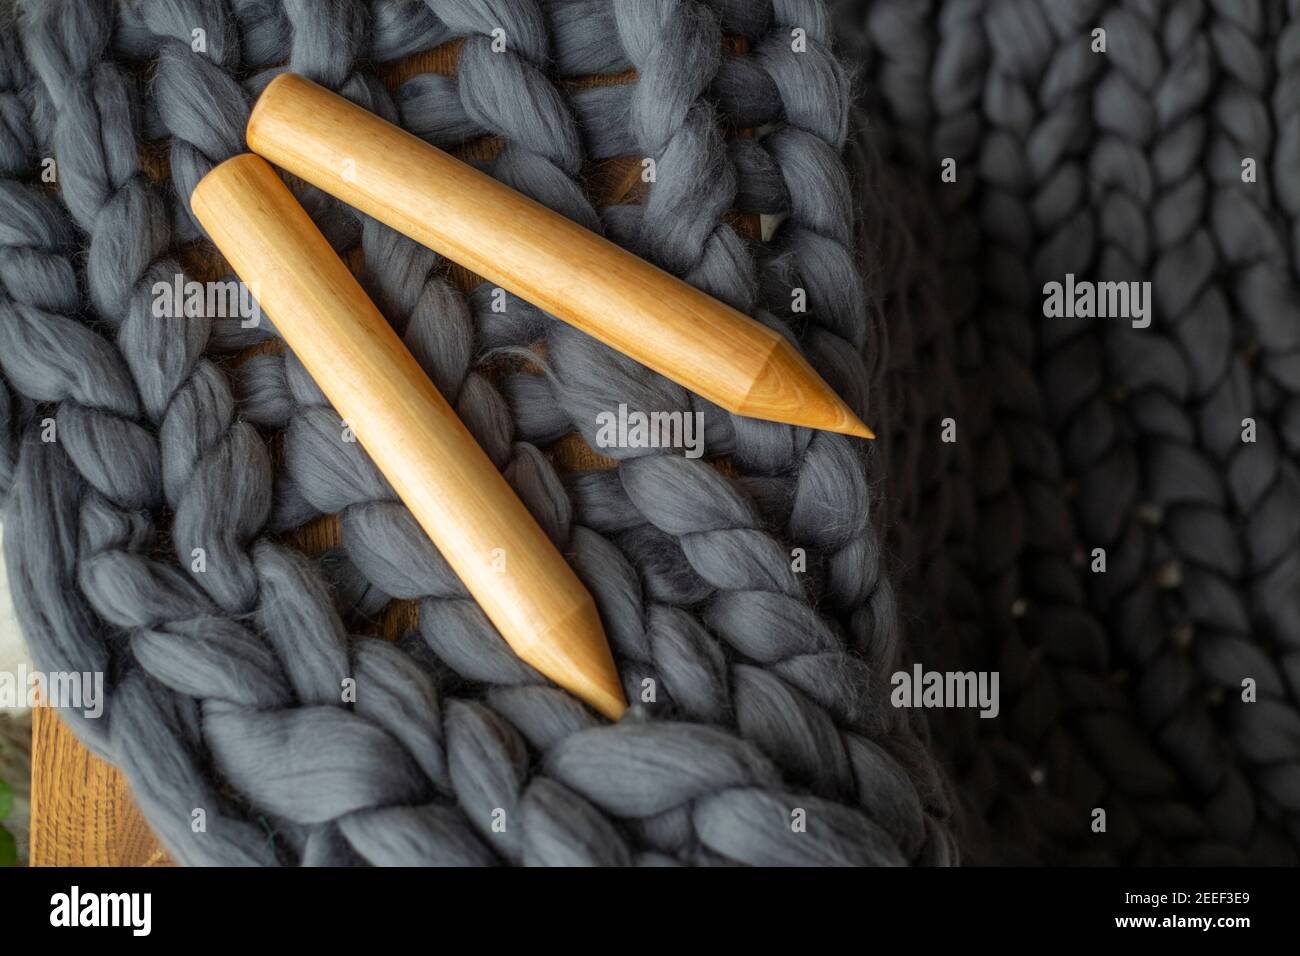 Deux aiguilles à tricoter en bois couchés sur de la laine mérinos grise Banque D'Images